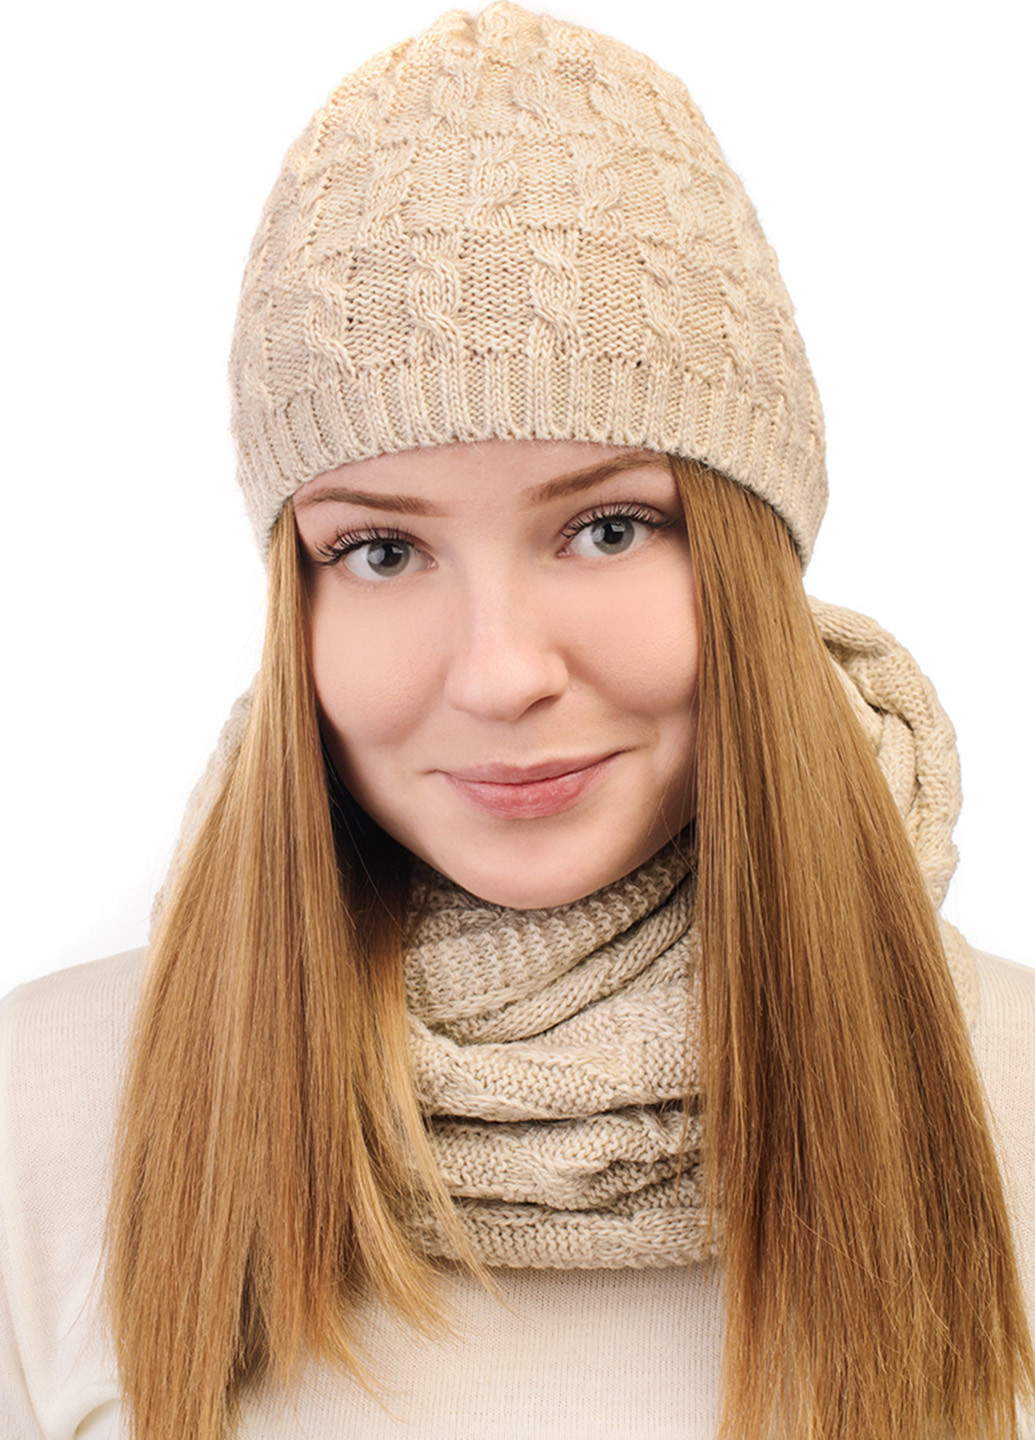 Светло-бежевый зимний комплект (шапка, шарф) SVTR